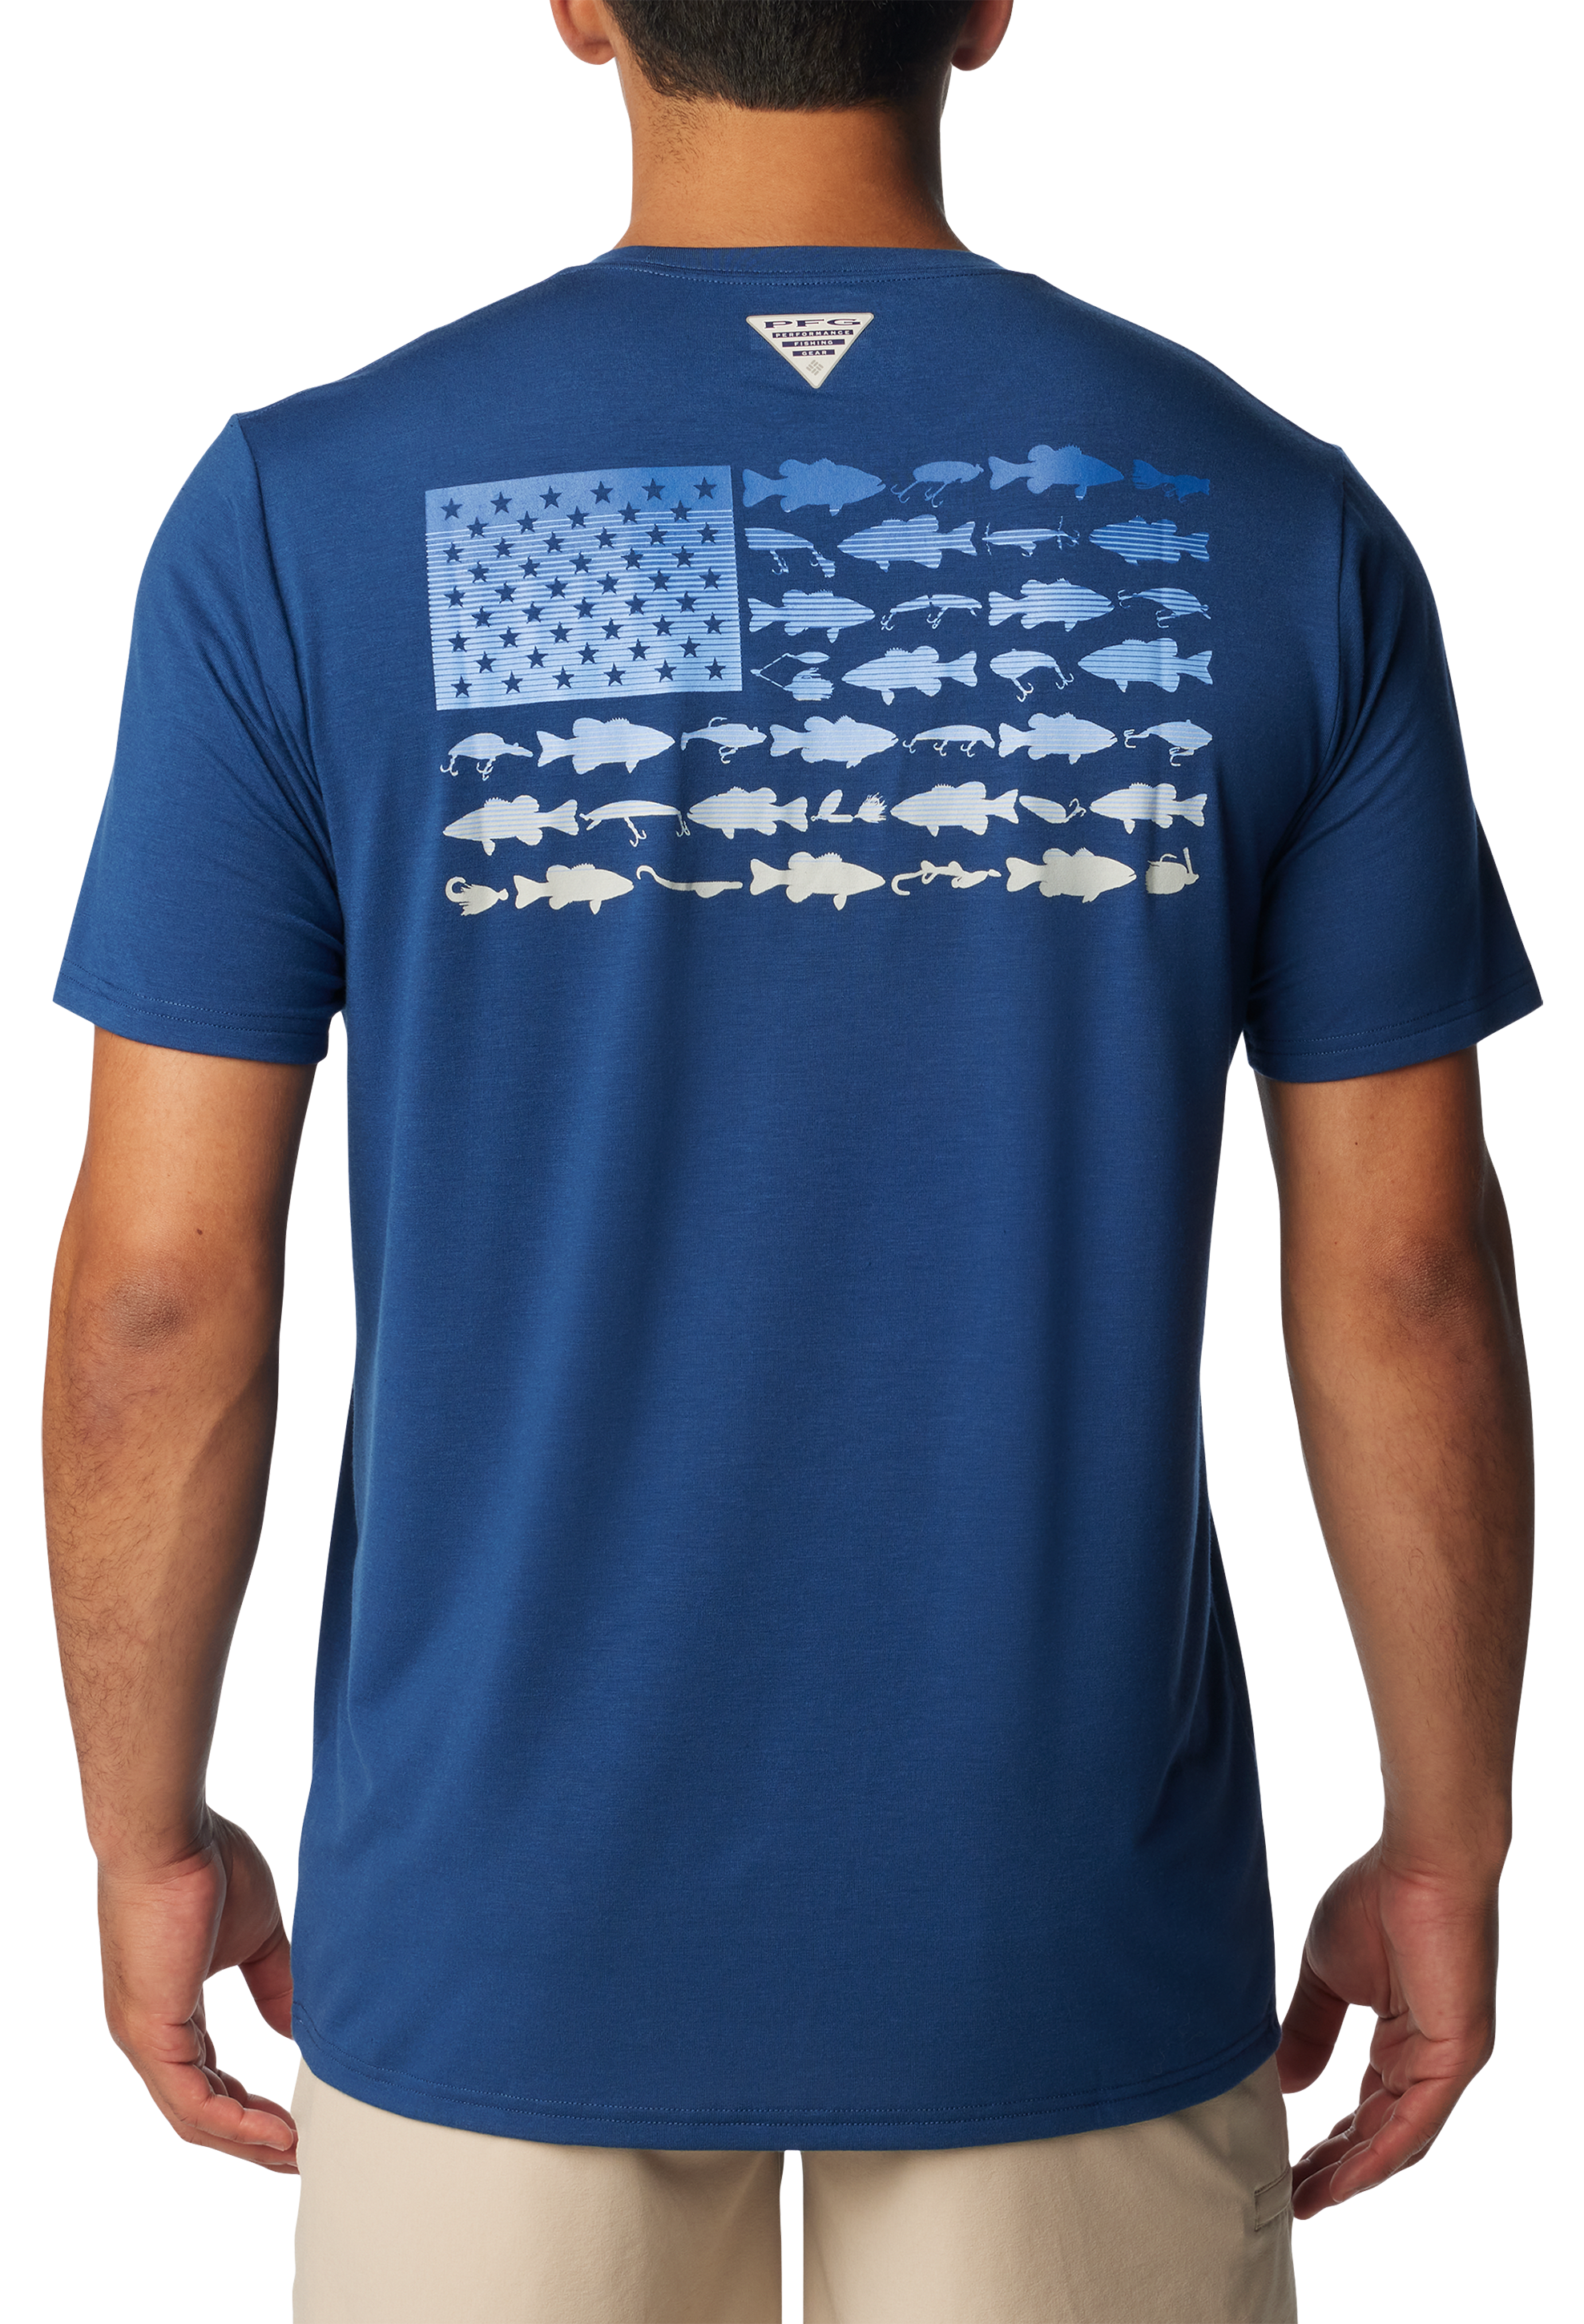 Saltwaters Fish Saltwater Fishing Shirts Men American Flag